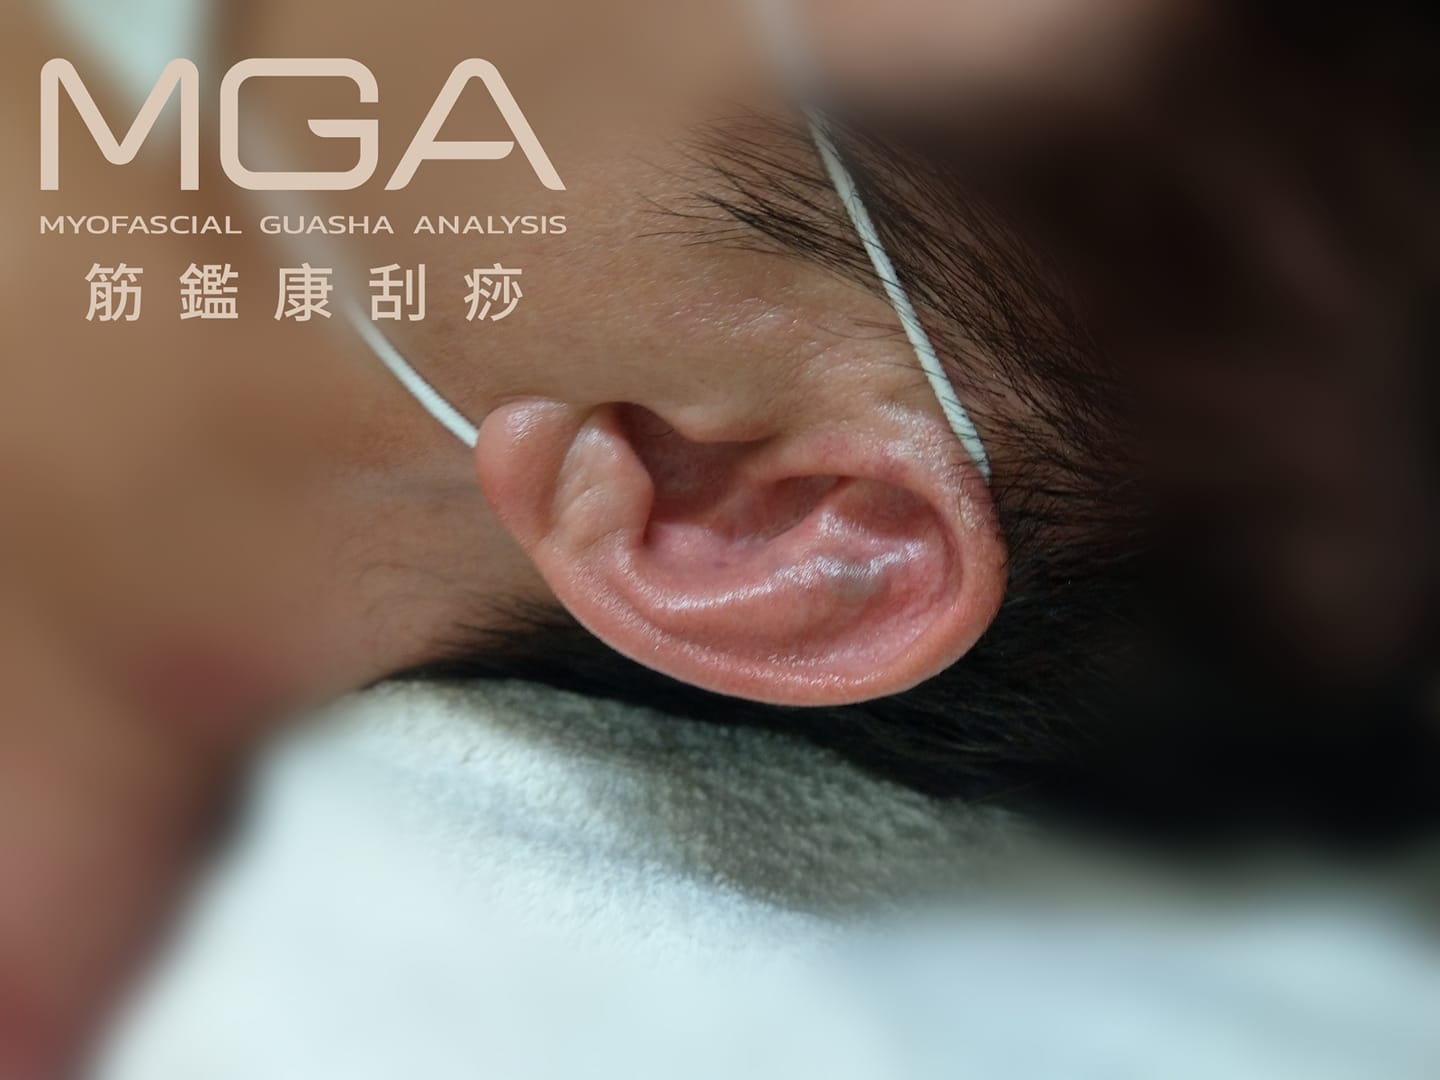 ［MGA隨堂考］耳朵上的痧種為？ 容易造成什麼問題？大部分是什麼原因造成的呢？